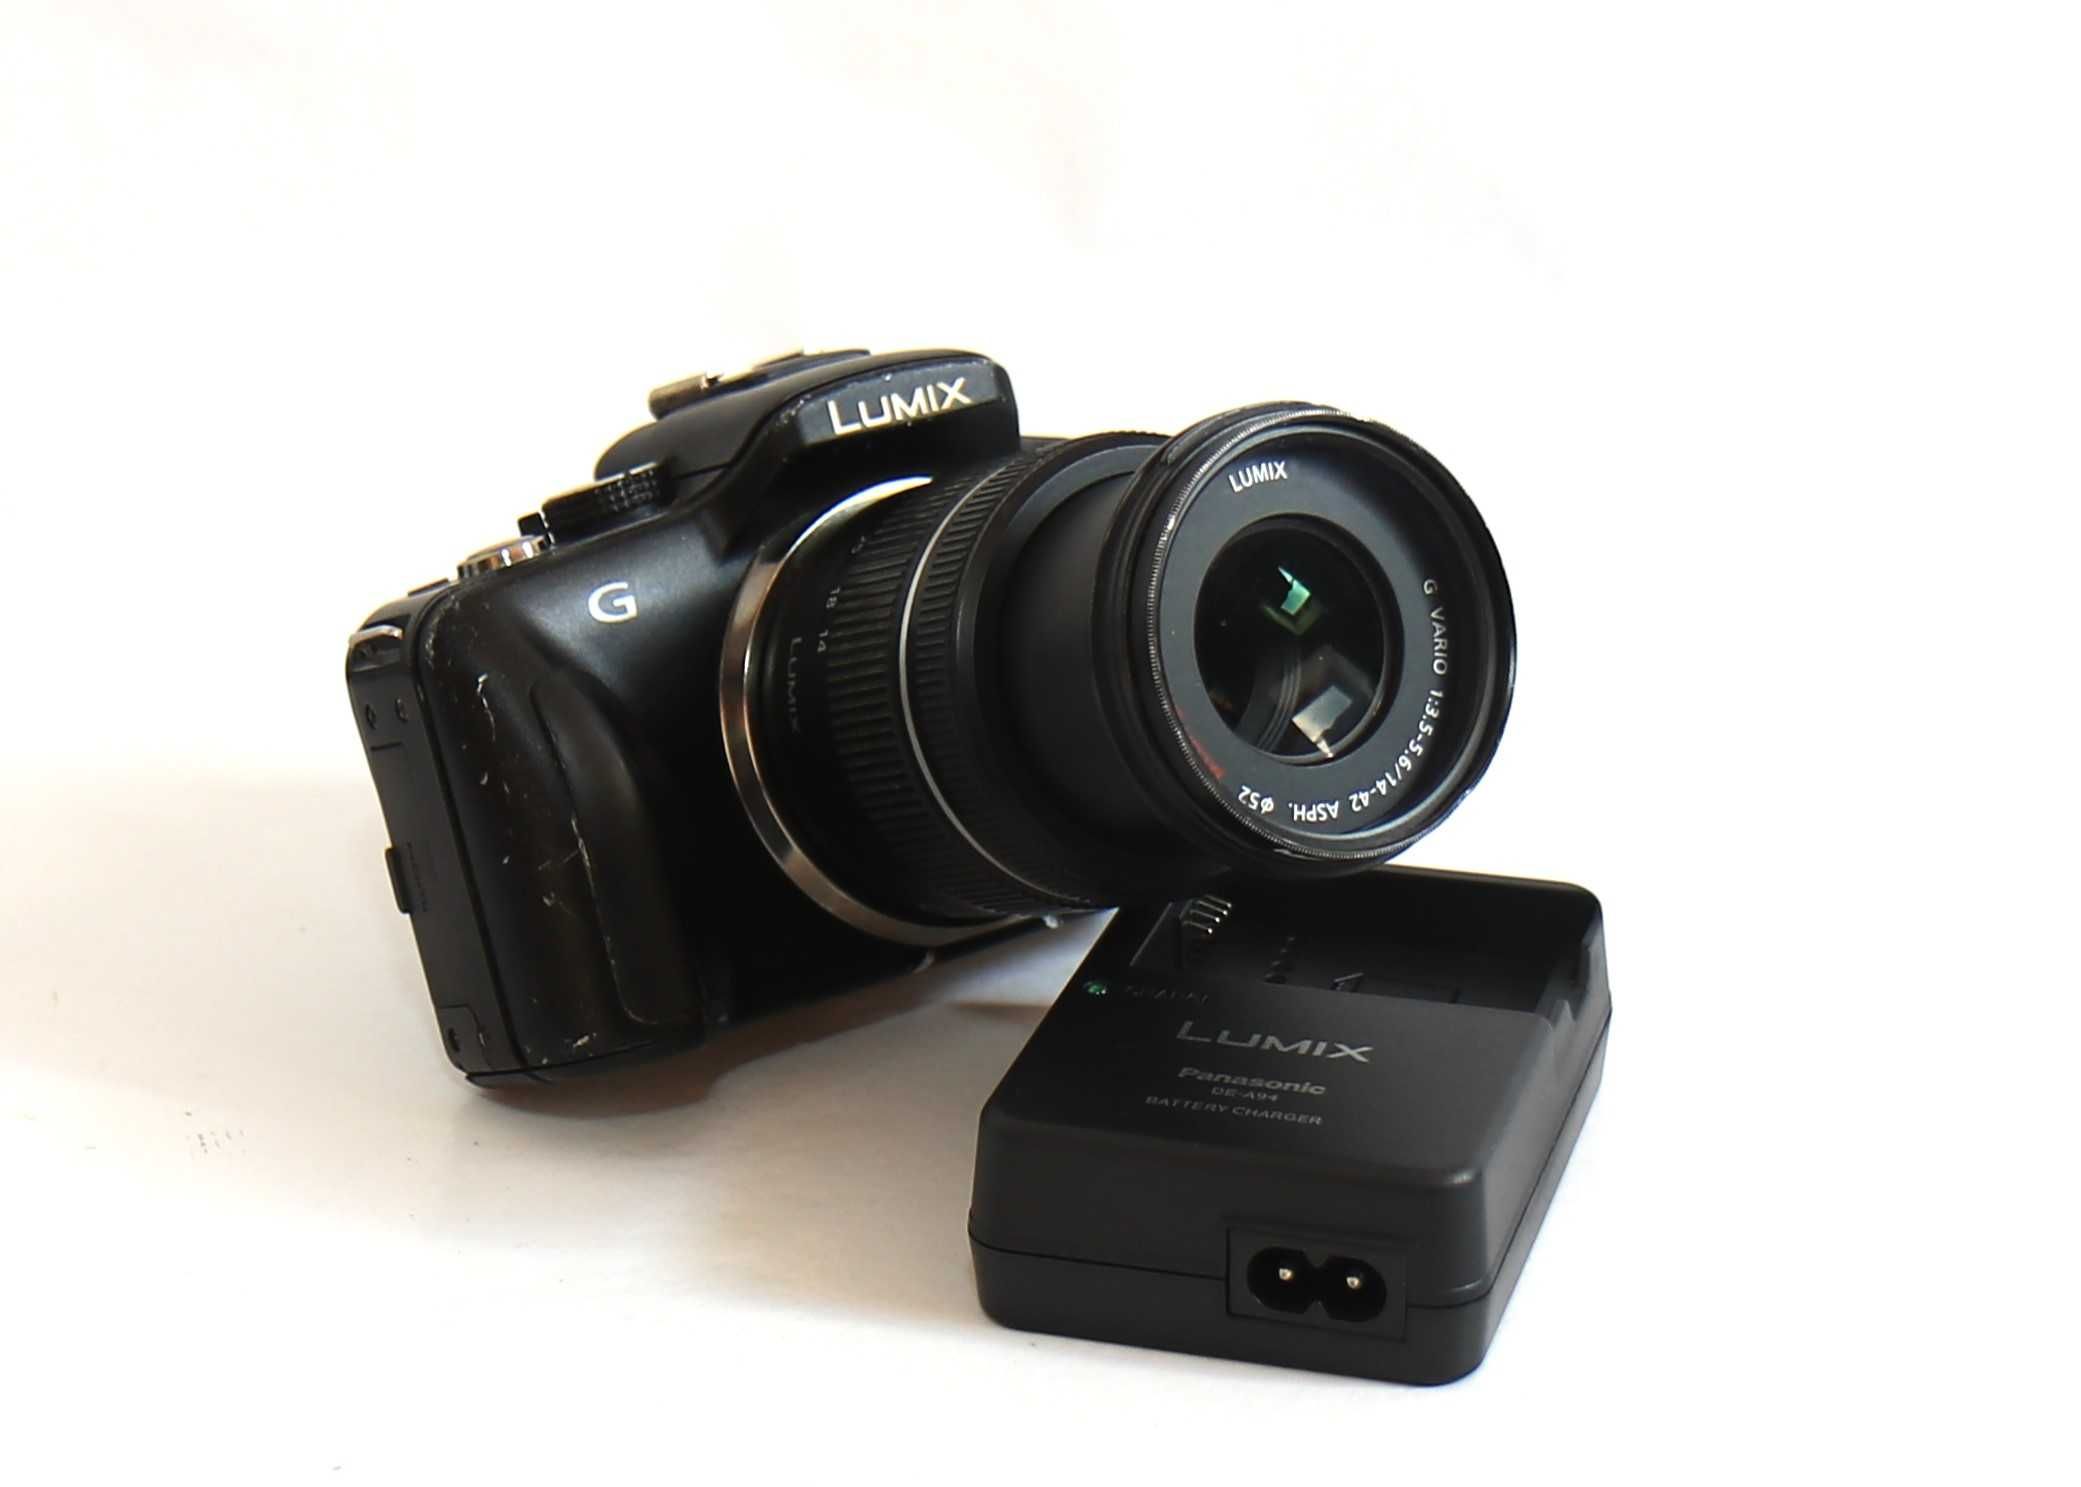 Lumix G3 com lente Lumix 14-42mm máquina fotográfica digital